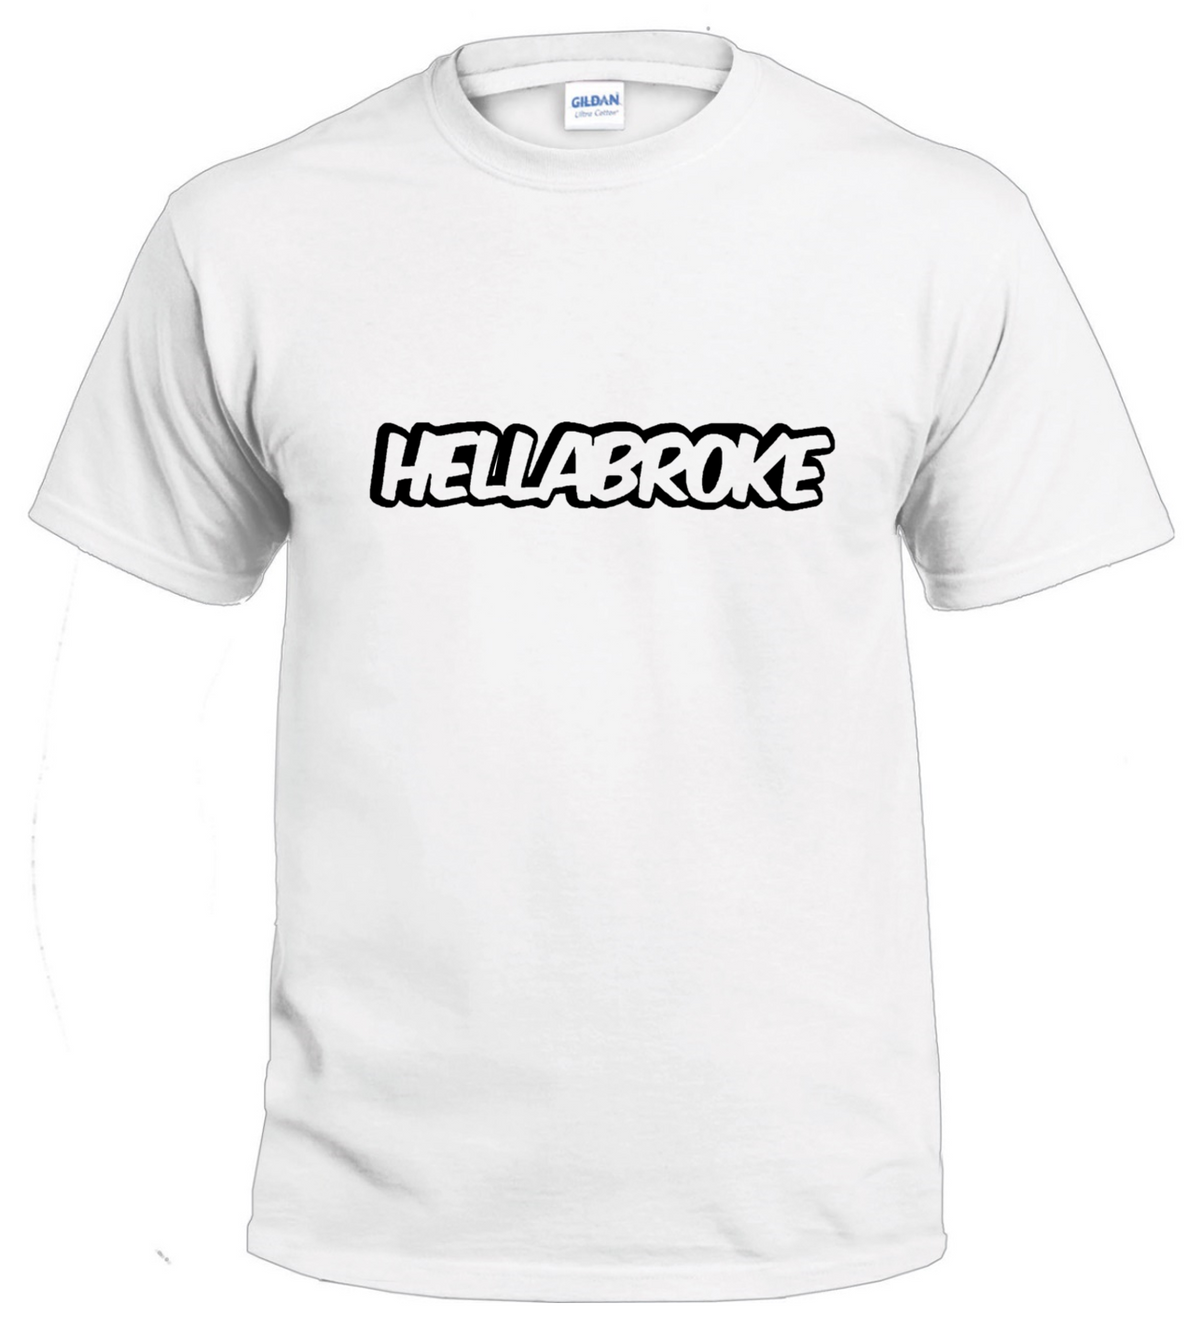 HellaBroke Basshead tshirt